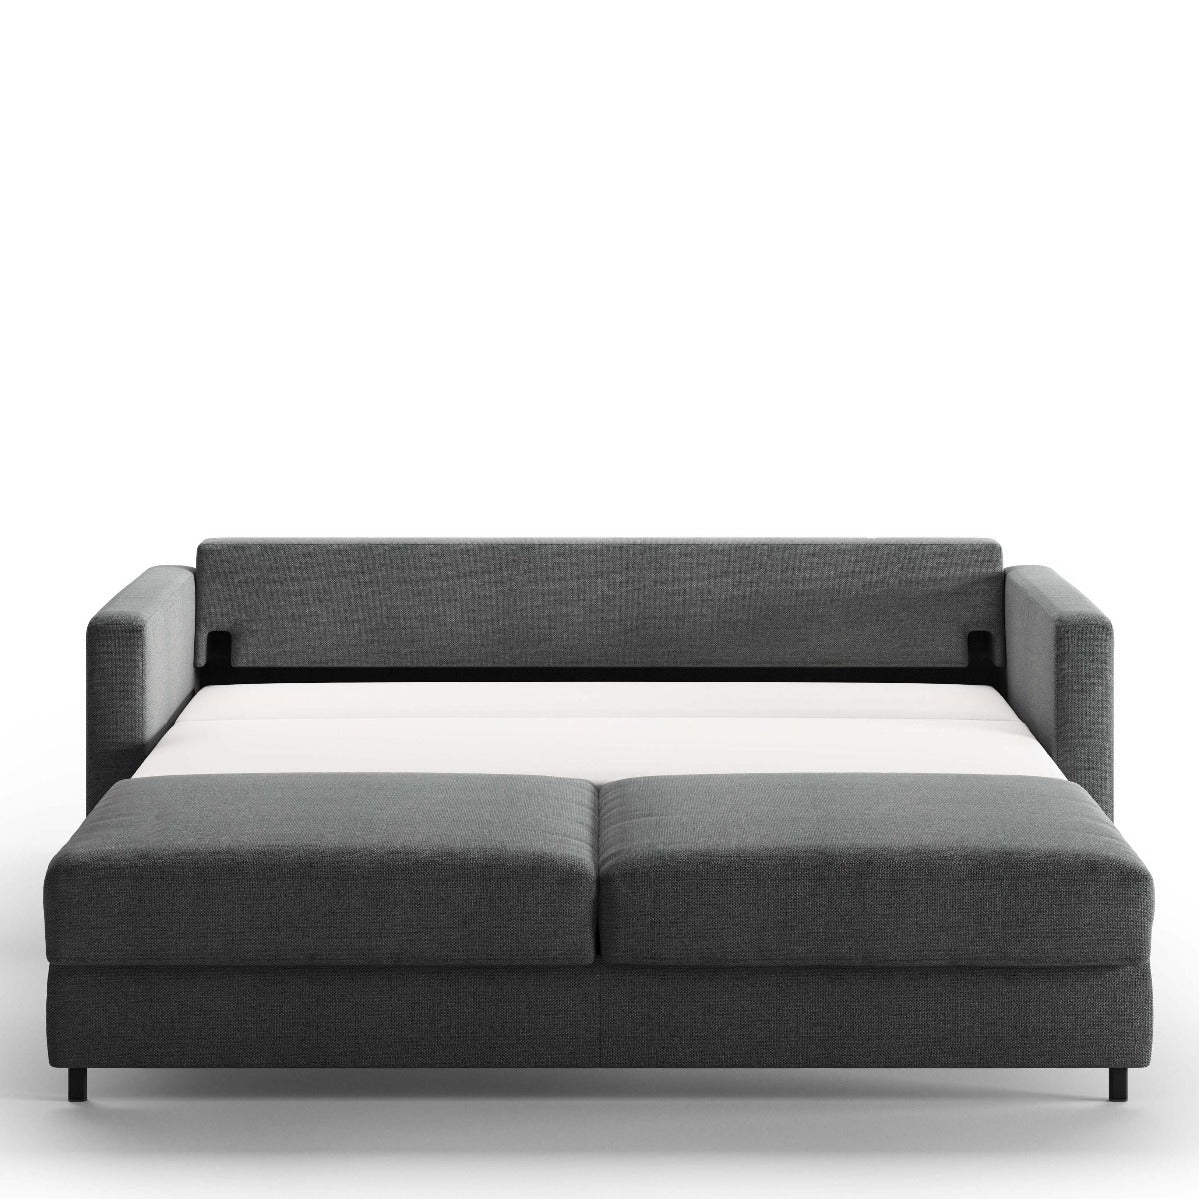 Luonto Furniture Fantasy King Sofa Sleeper - Fun 481 - 217/6 Chrome